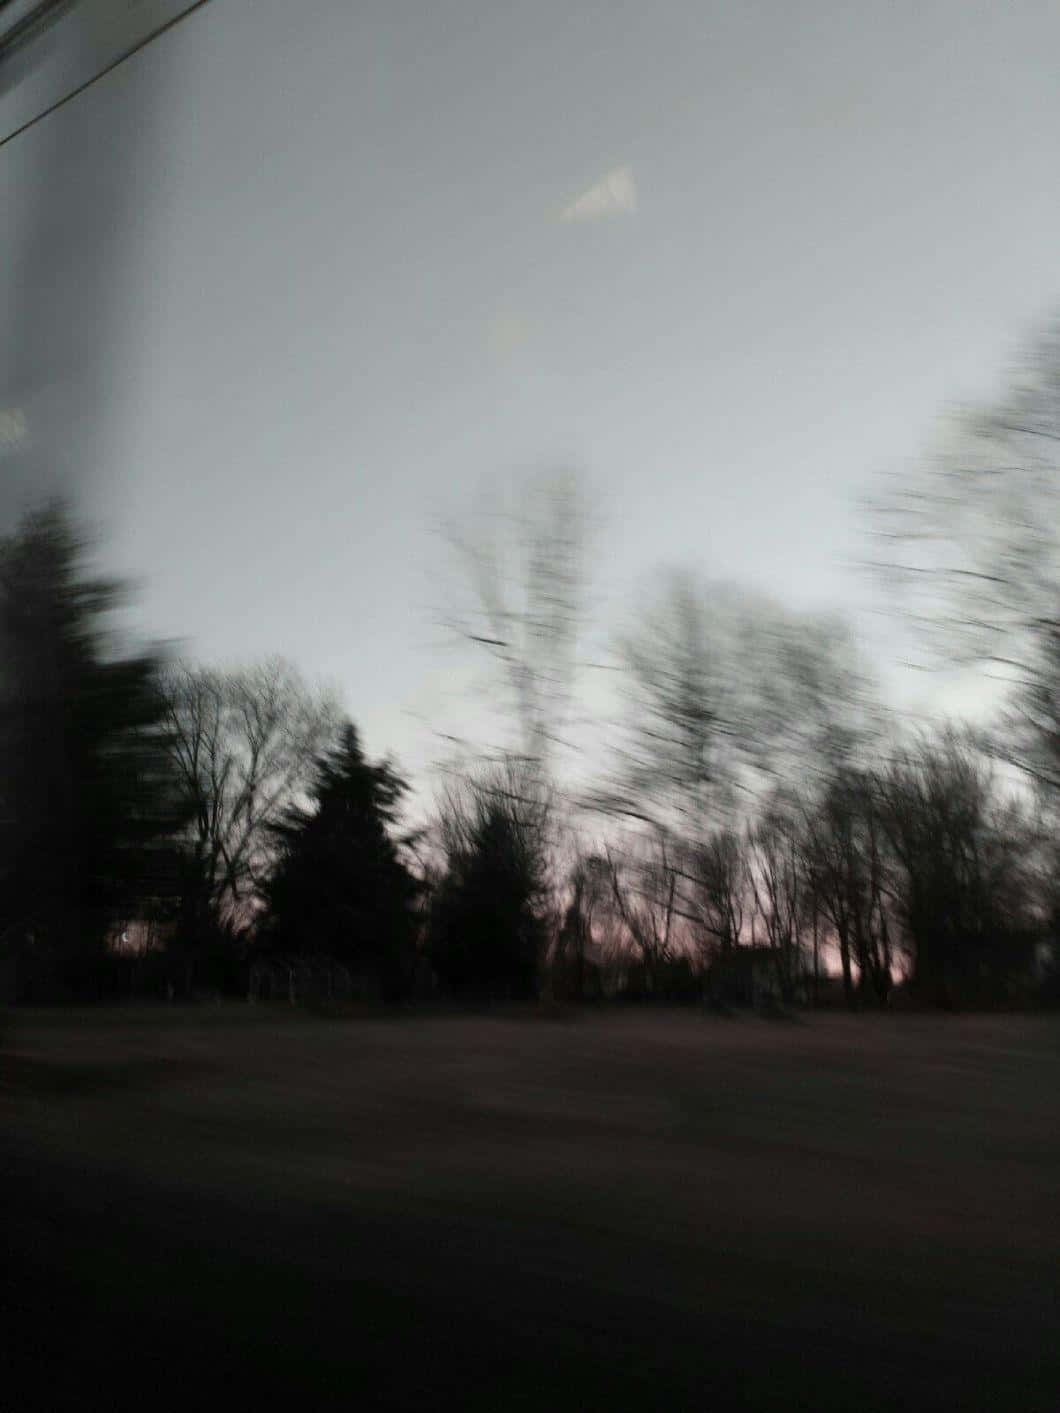 Twilight Blur Grunge Aesthetic.jpg Wallpaper